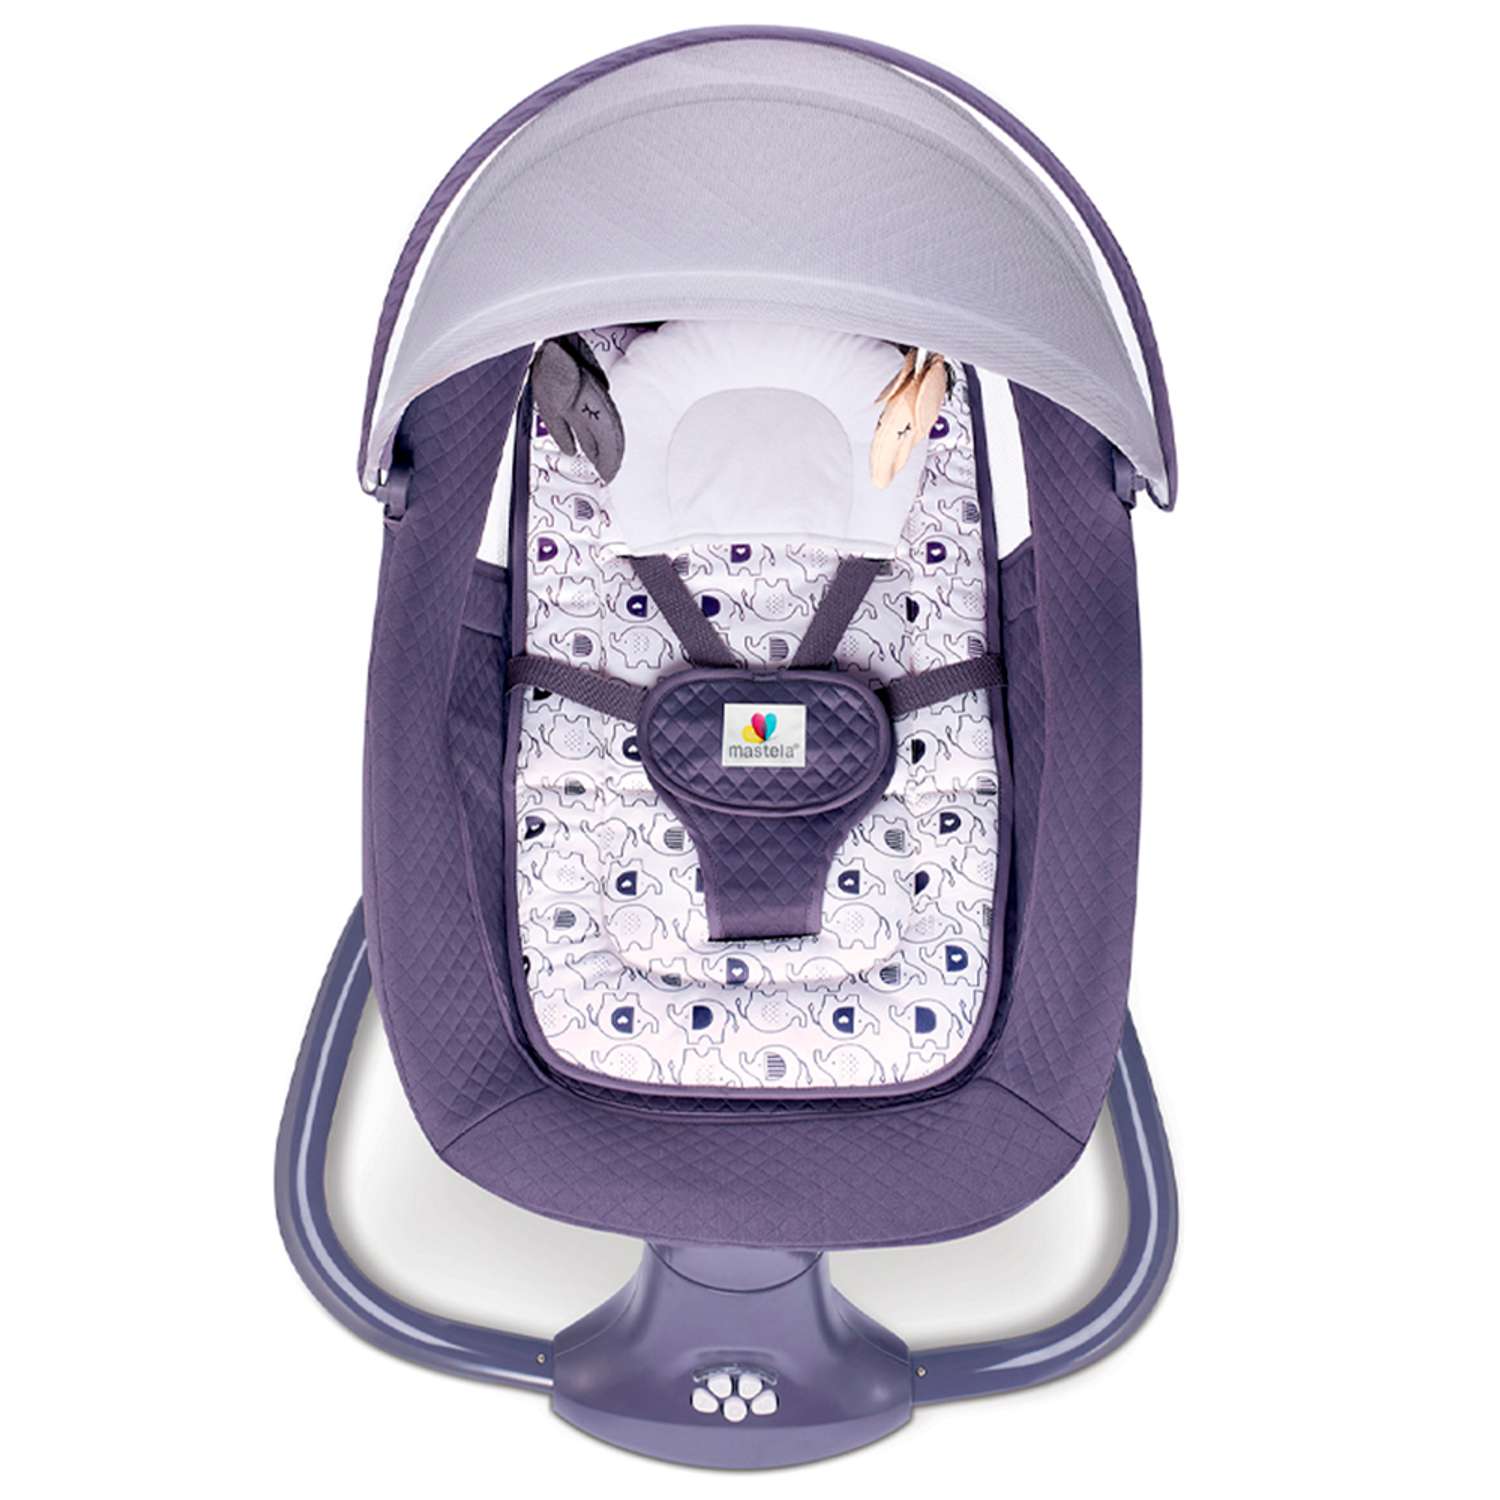 Качели-шезлонг Mastela Электронные для новорожденных фиолетовый - фото 4